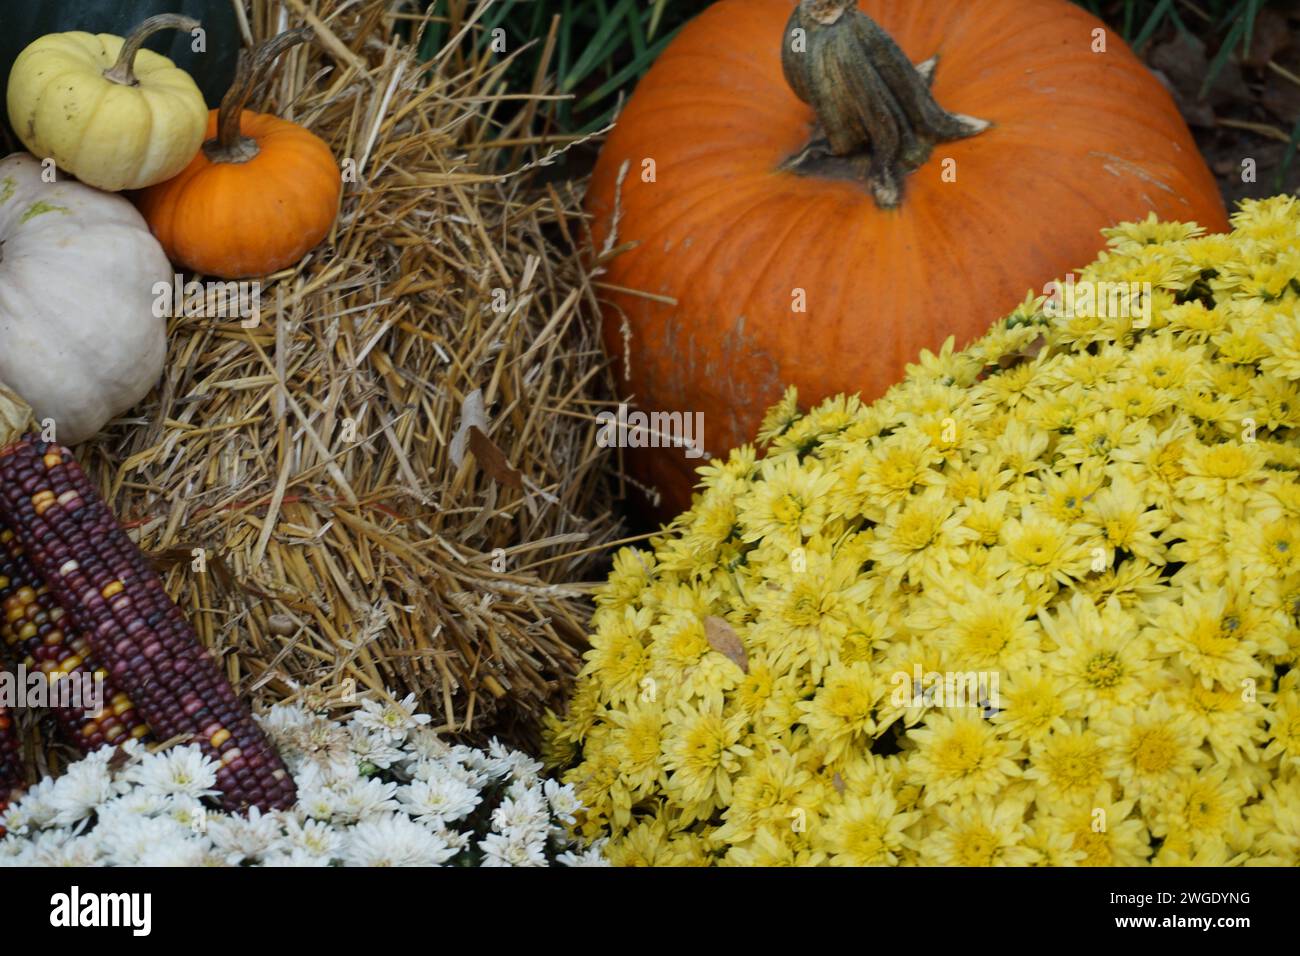 Un vivace e accogliente primo piano di una raccolta autunnale presenta zucche, crisantemi e mais, a simboleggiare la ricchezza della stagione. Foto Stock